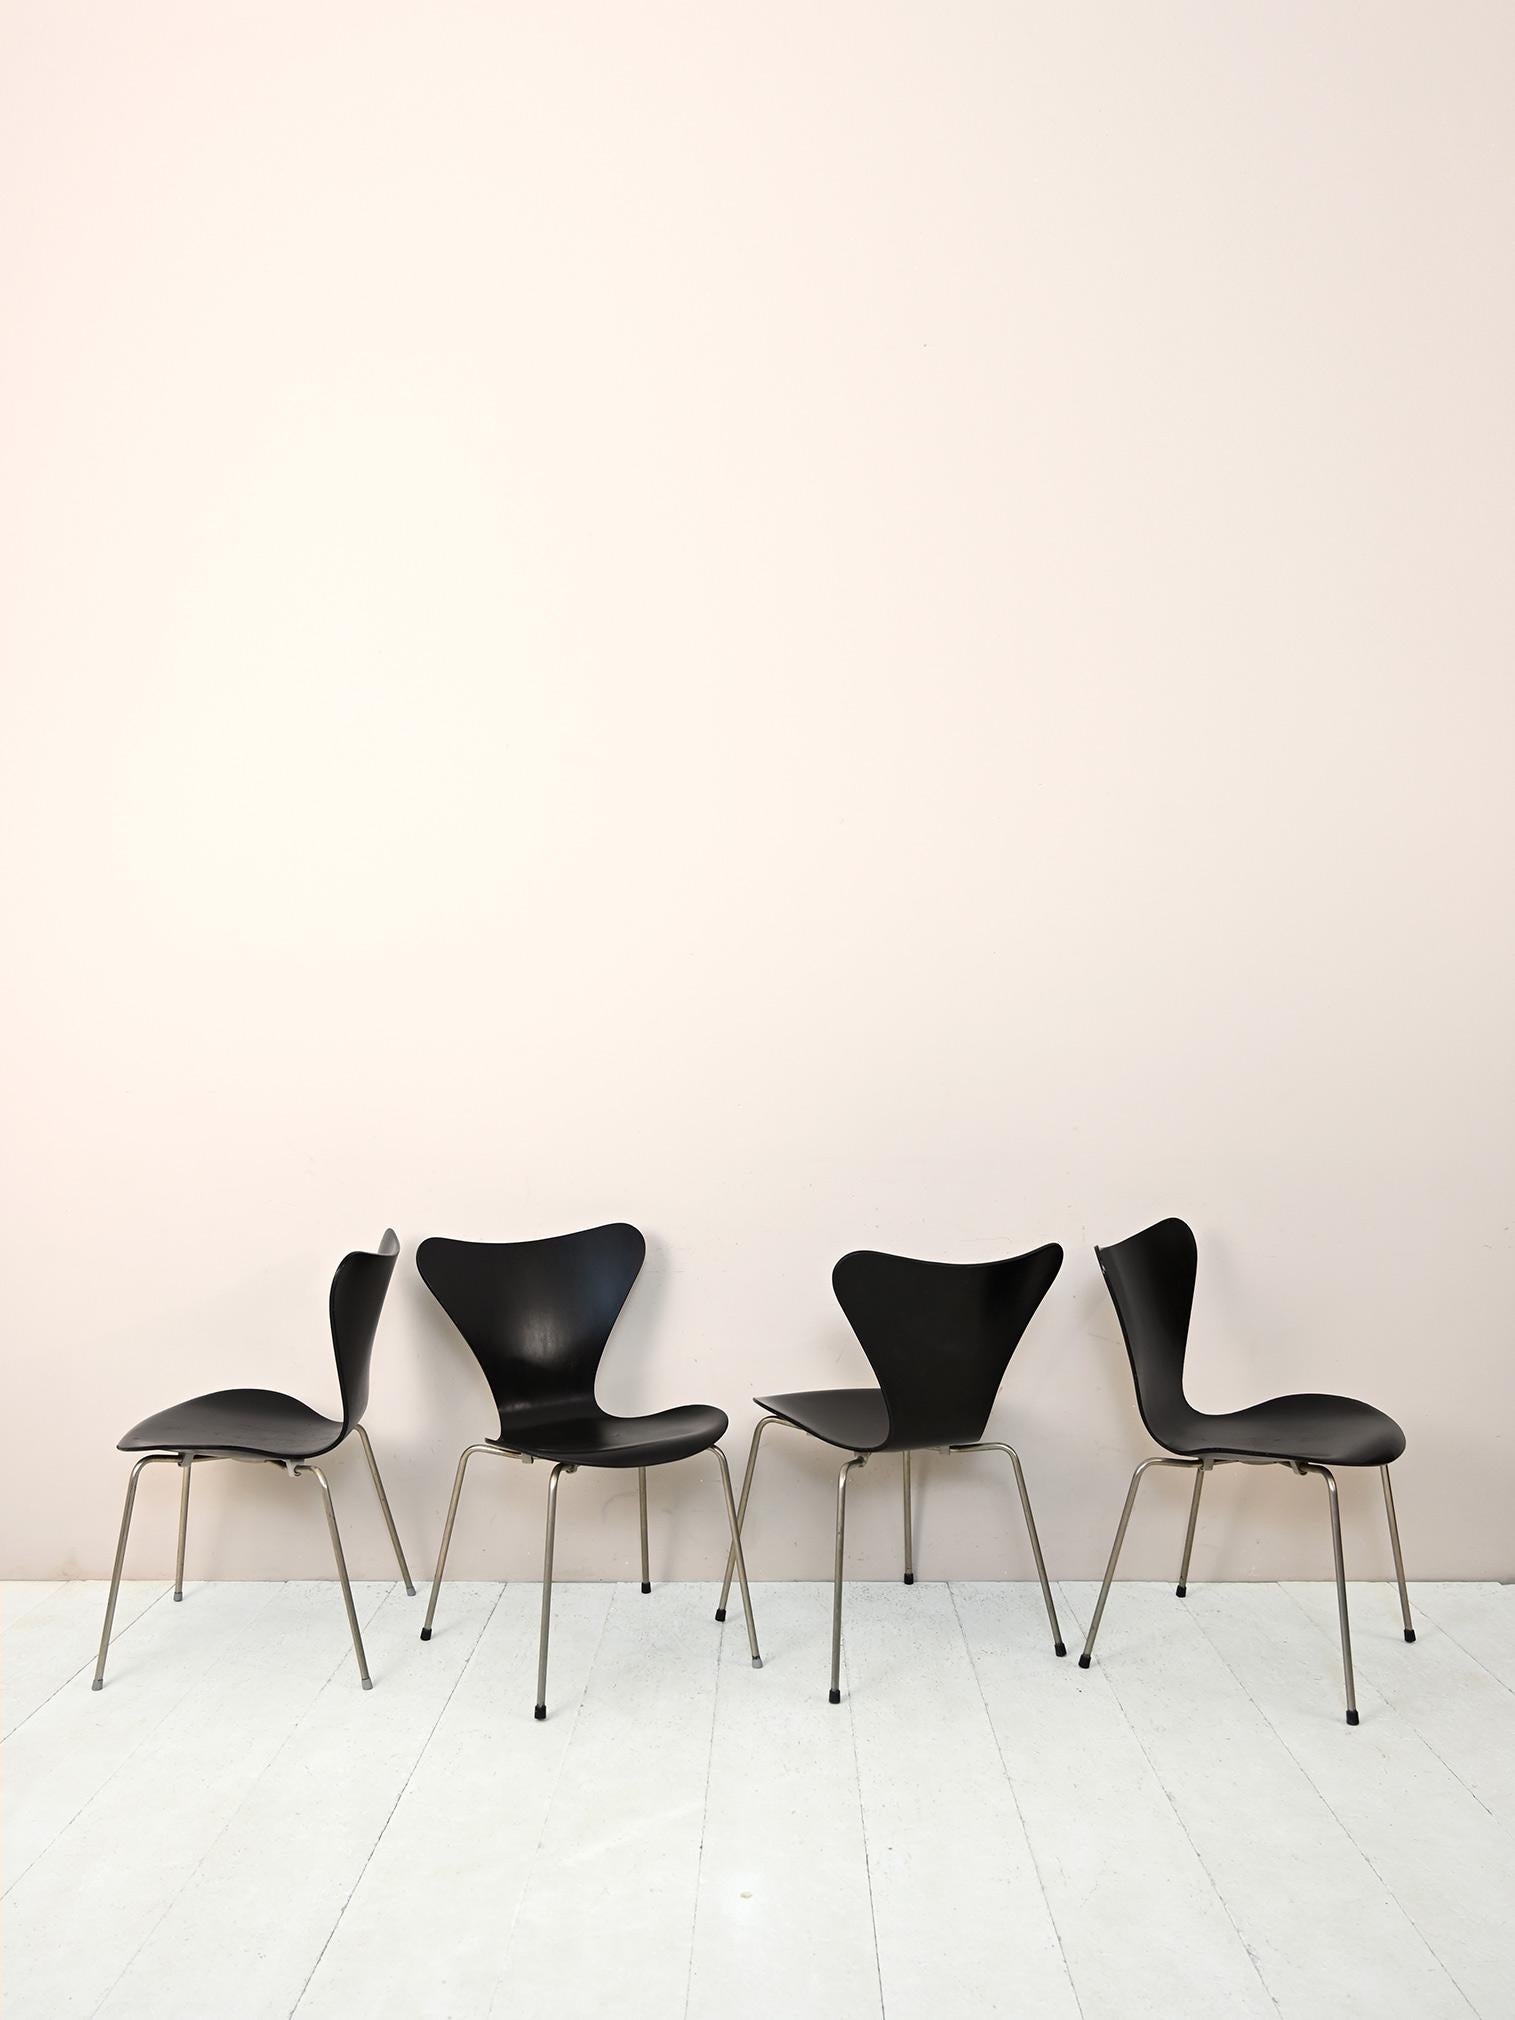 4 chaises emblématiques du designer Arne Jacobsen.

Connue sous le nom de chaise Series 7, la chaise 3107 fait partie de la légende du design, une chaise intemporelle et historique. Jacobsen, inspiré par le travail de Charles Eames, a développé